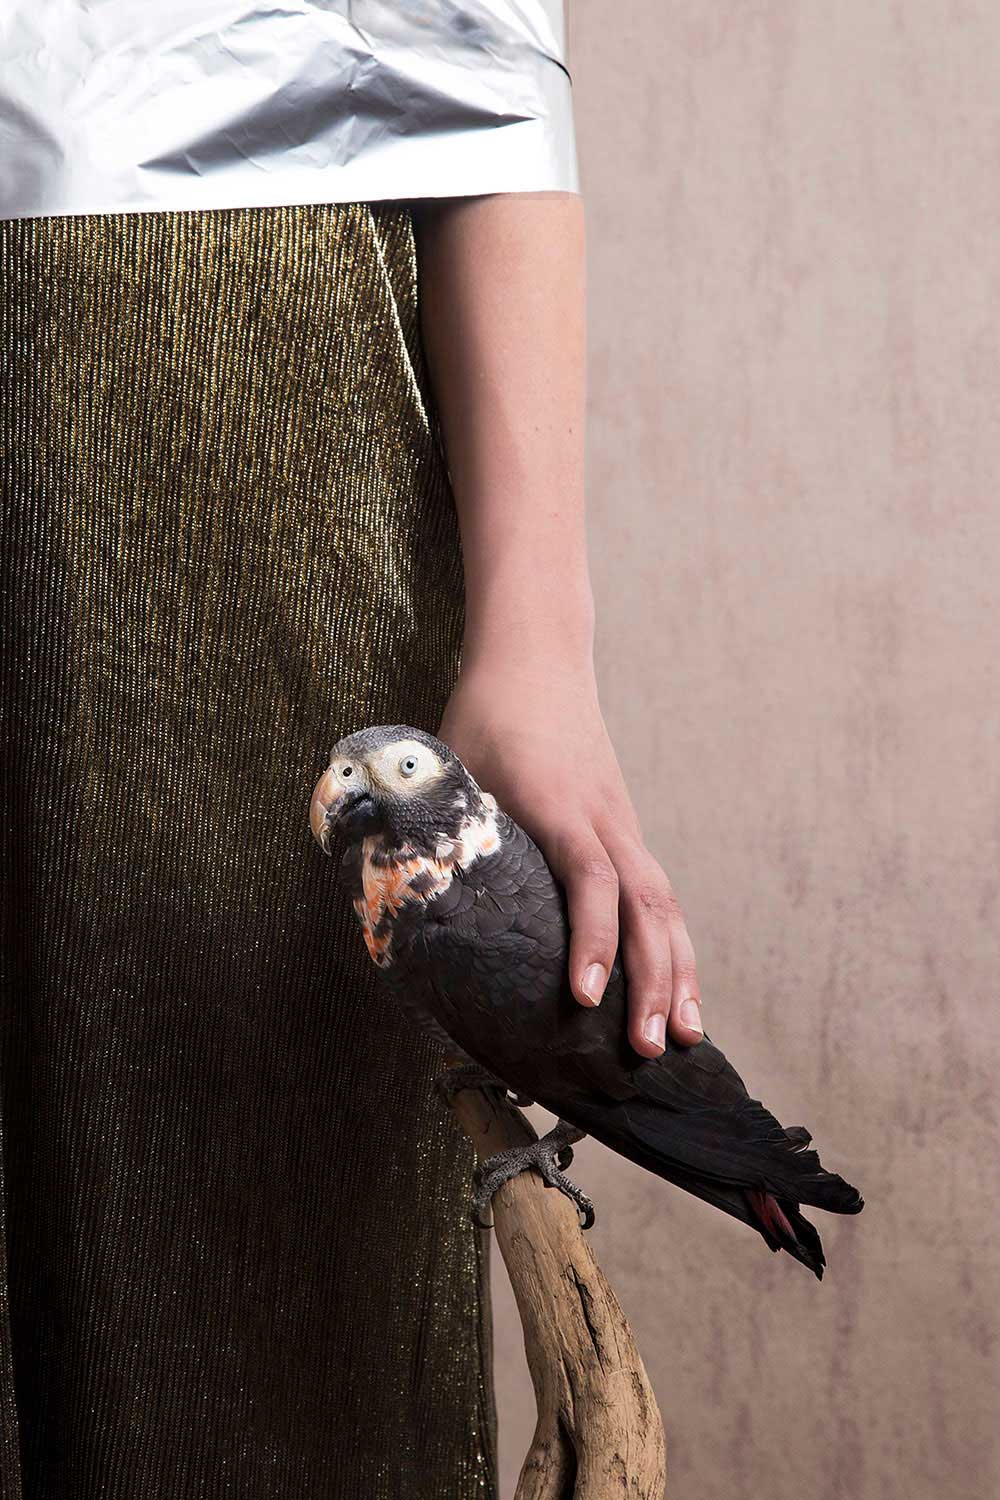 Birds & Plastics by Alice de Kruijs